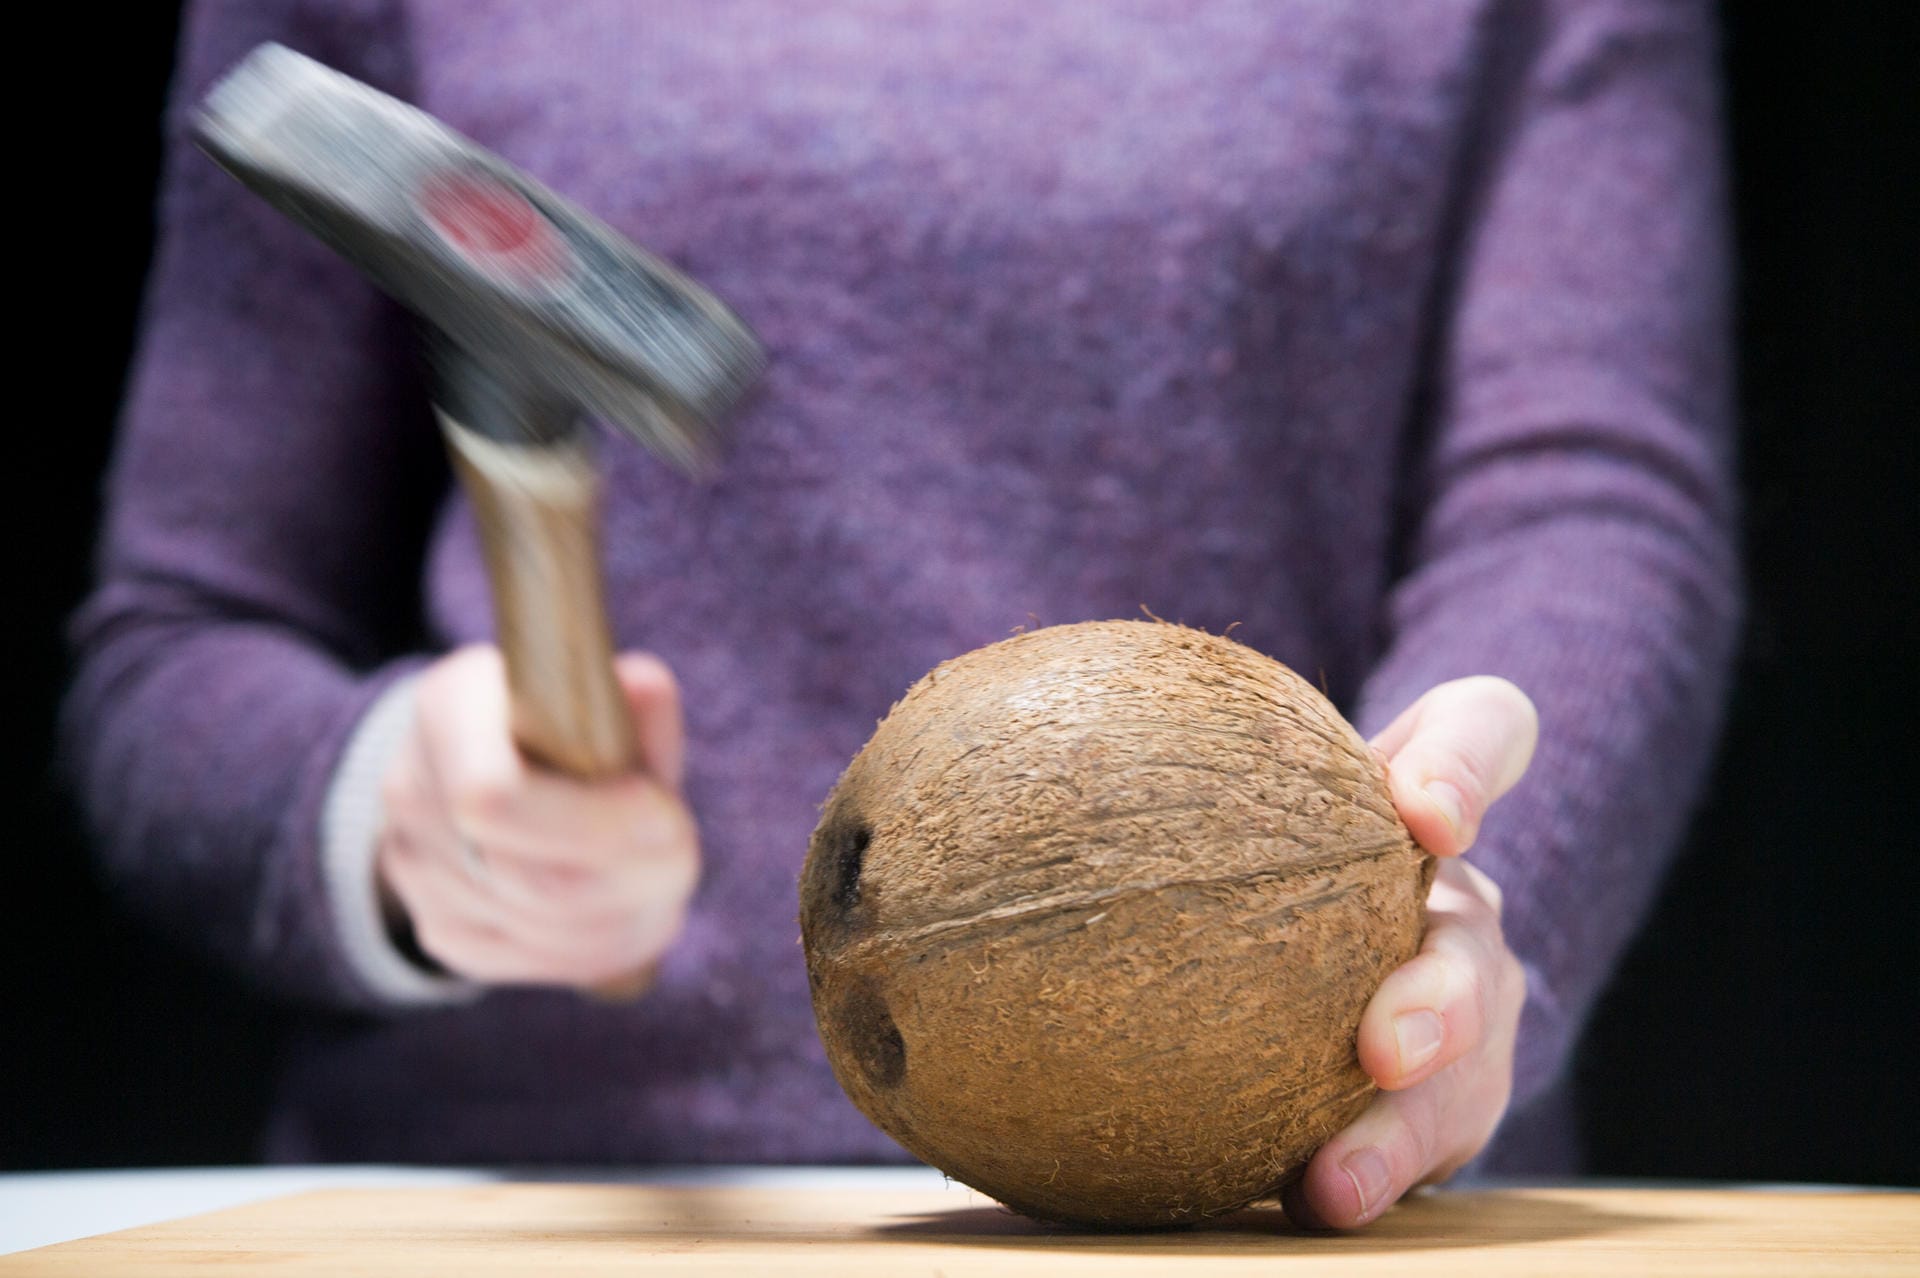 Kokosnuss: Schritt 3 – Mit einem Hammer rundherum in die Mitte der Schale schlagen.